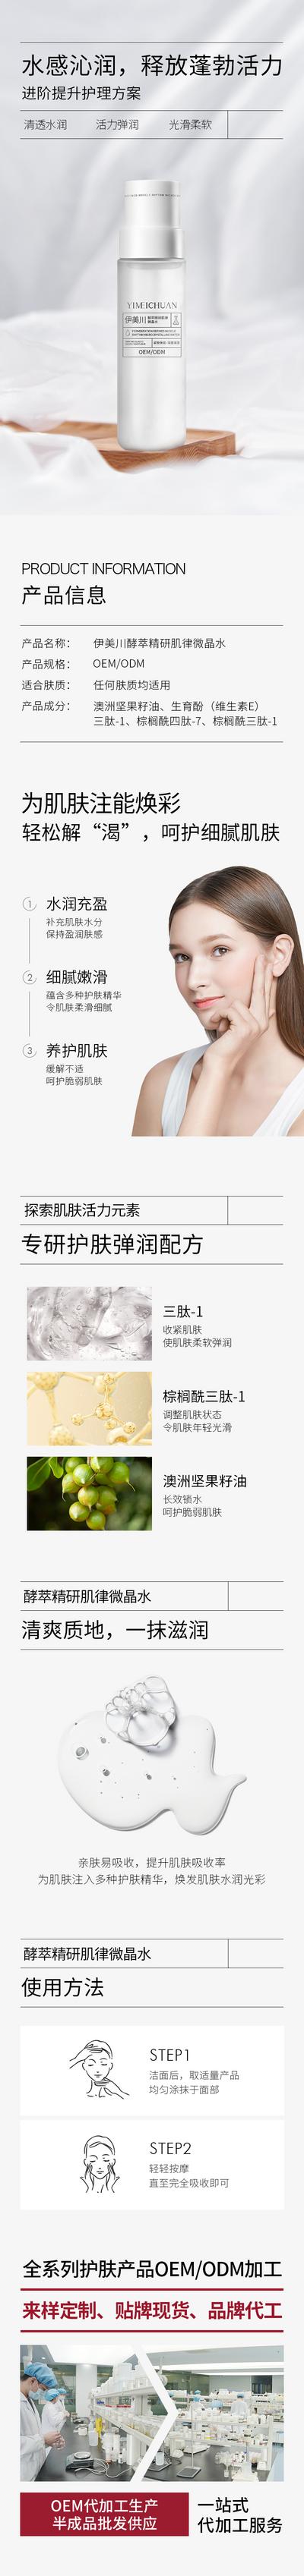 南门网 广告 海报 电商 精华 详情页 长图 介绍 化妆品